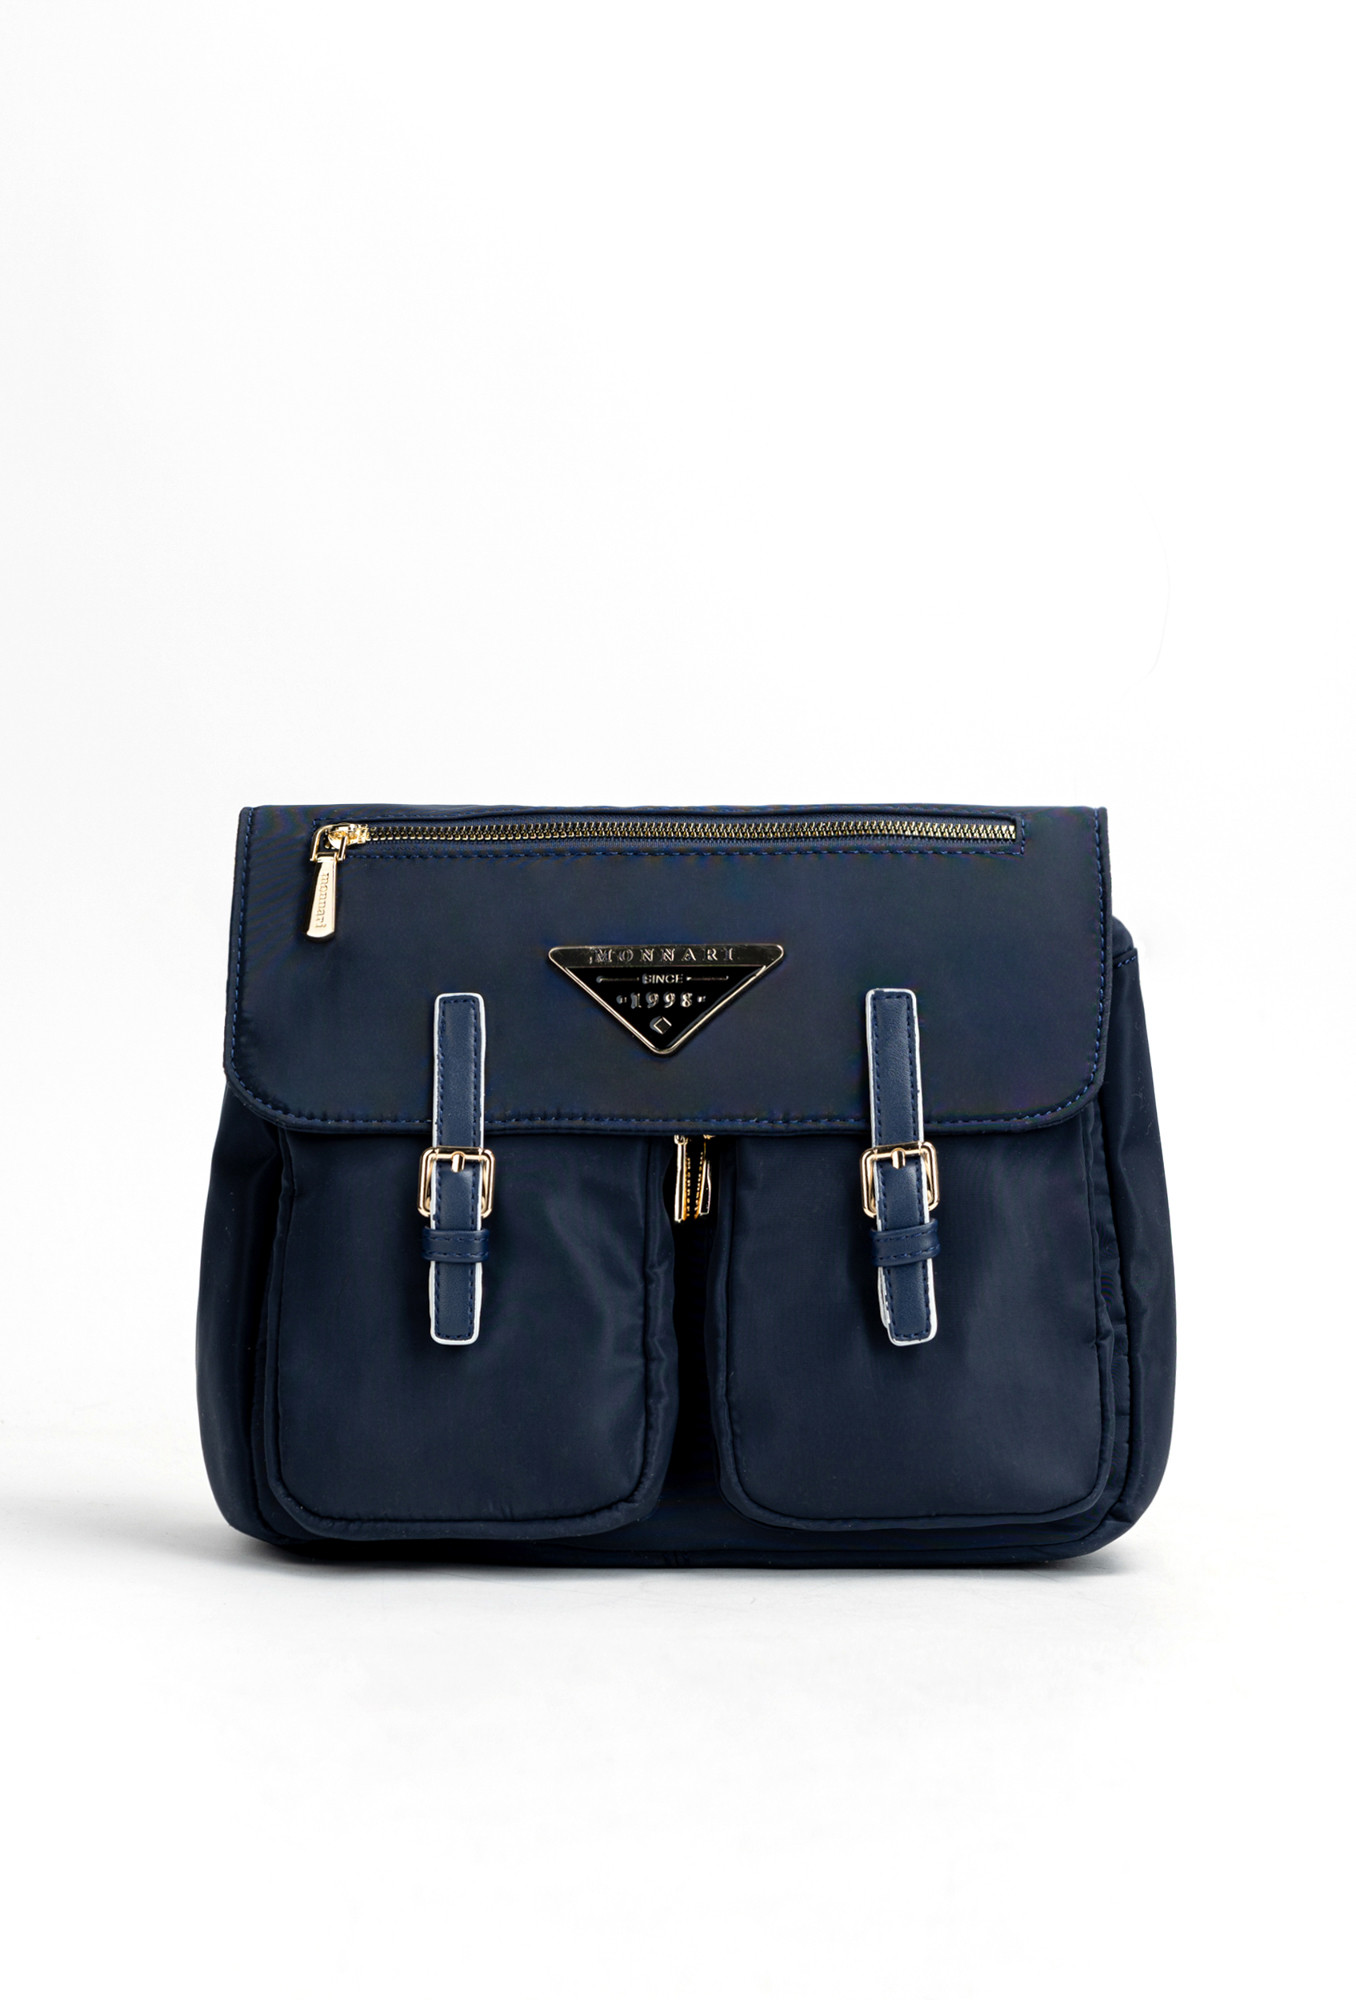 Monnari Bags Velká dámská taška s kapsami Námořnická modrá OS